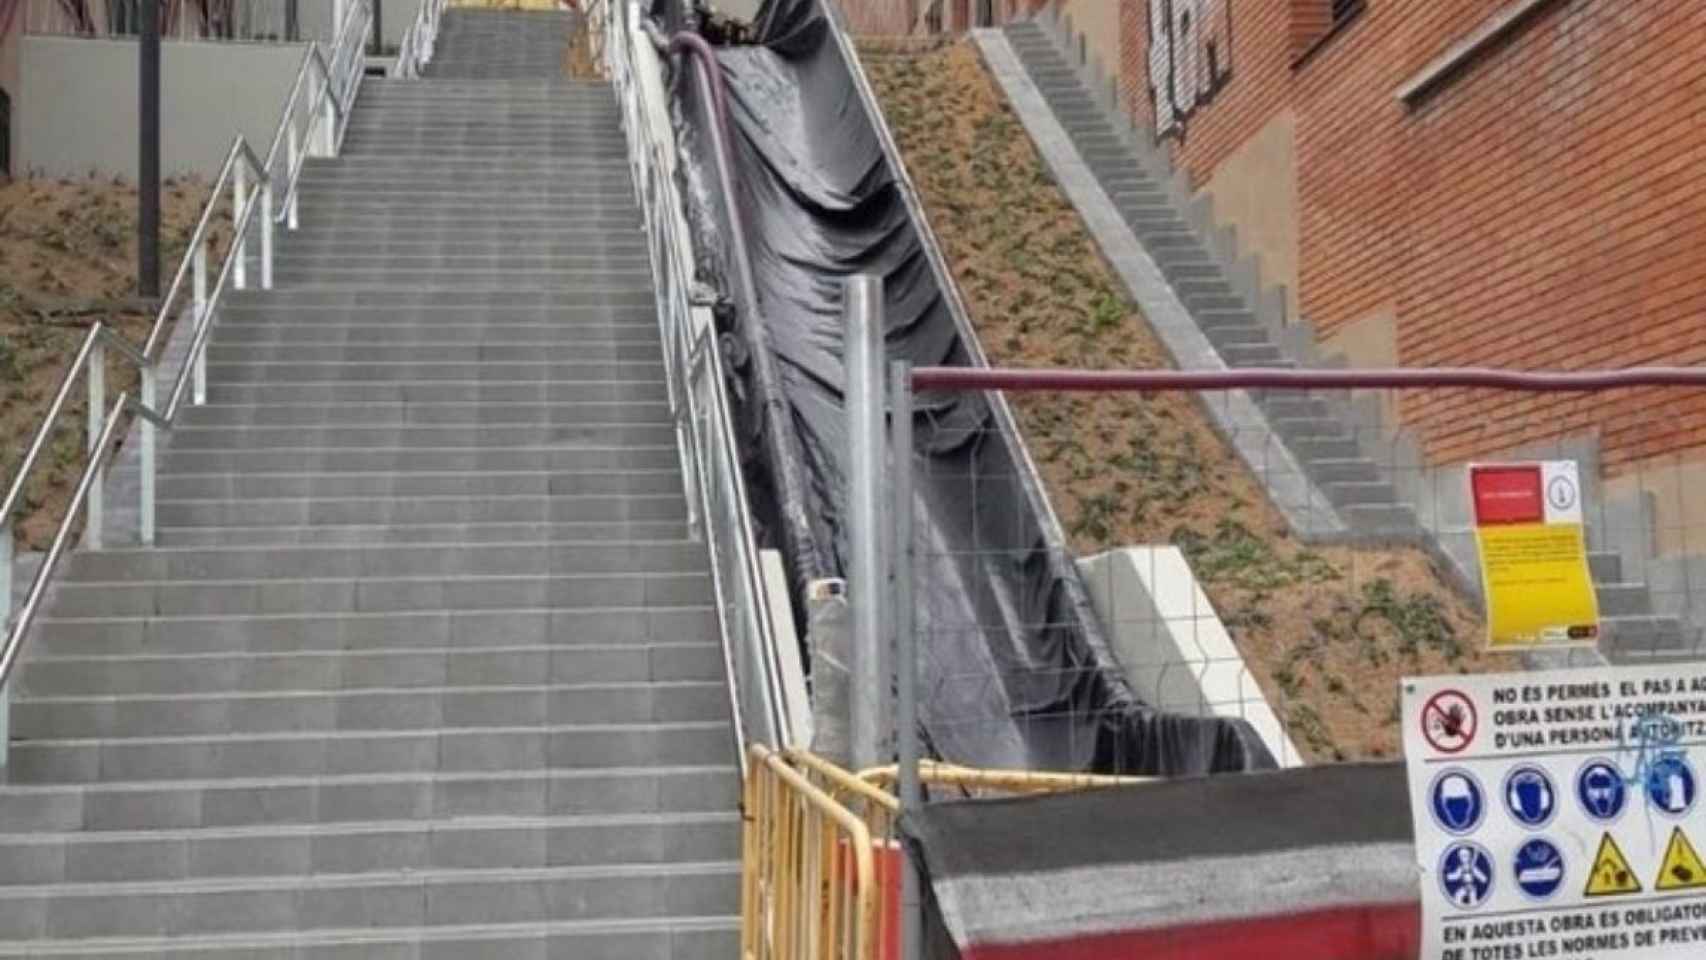 Imagen de archivo de unas escaleras mecánicas en Barcelona